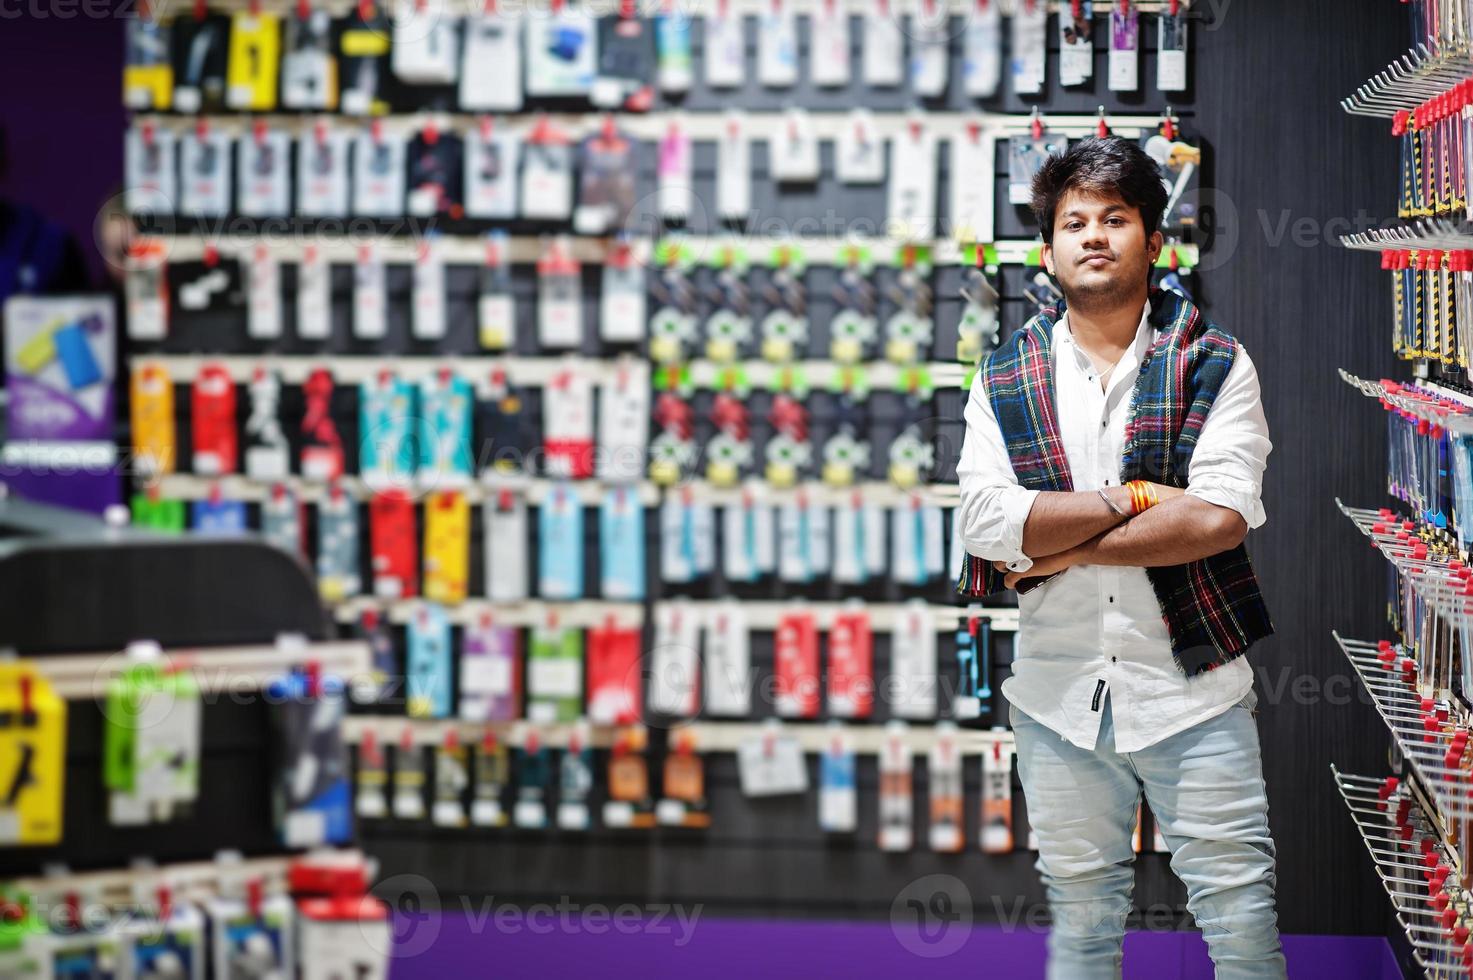 inder kundenkäufer im handyladen wählen eine hülle für sein smartphone. Konzept der südasiatischen Völker und Technologien. handy shop. foto